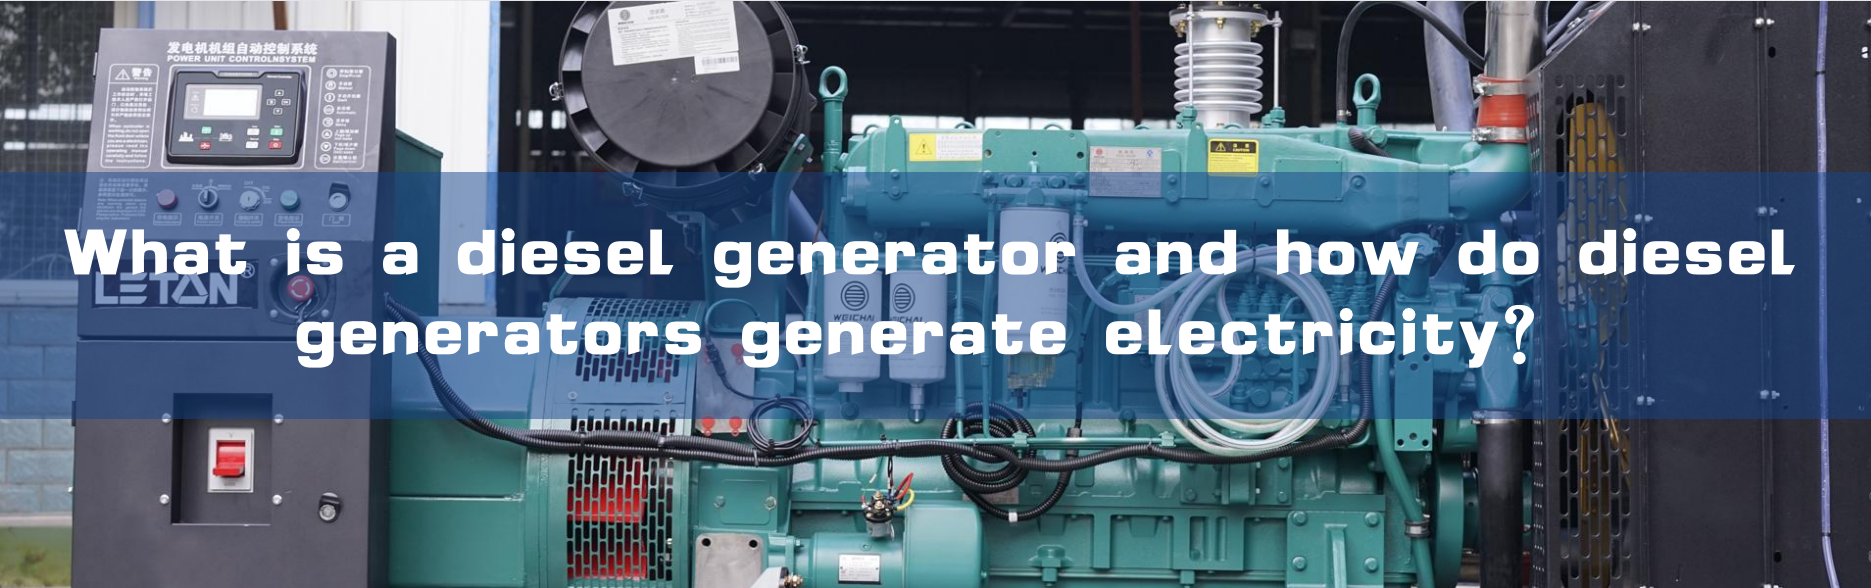 Mis on diiselgeneraator ja kuidas diiselgeneraatorid elektrit toodavad?